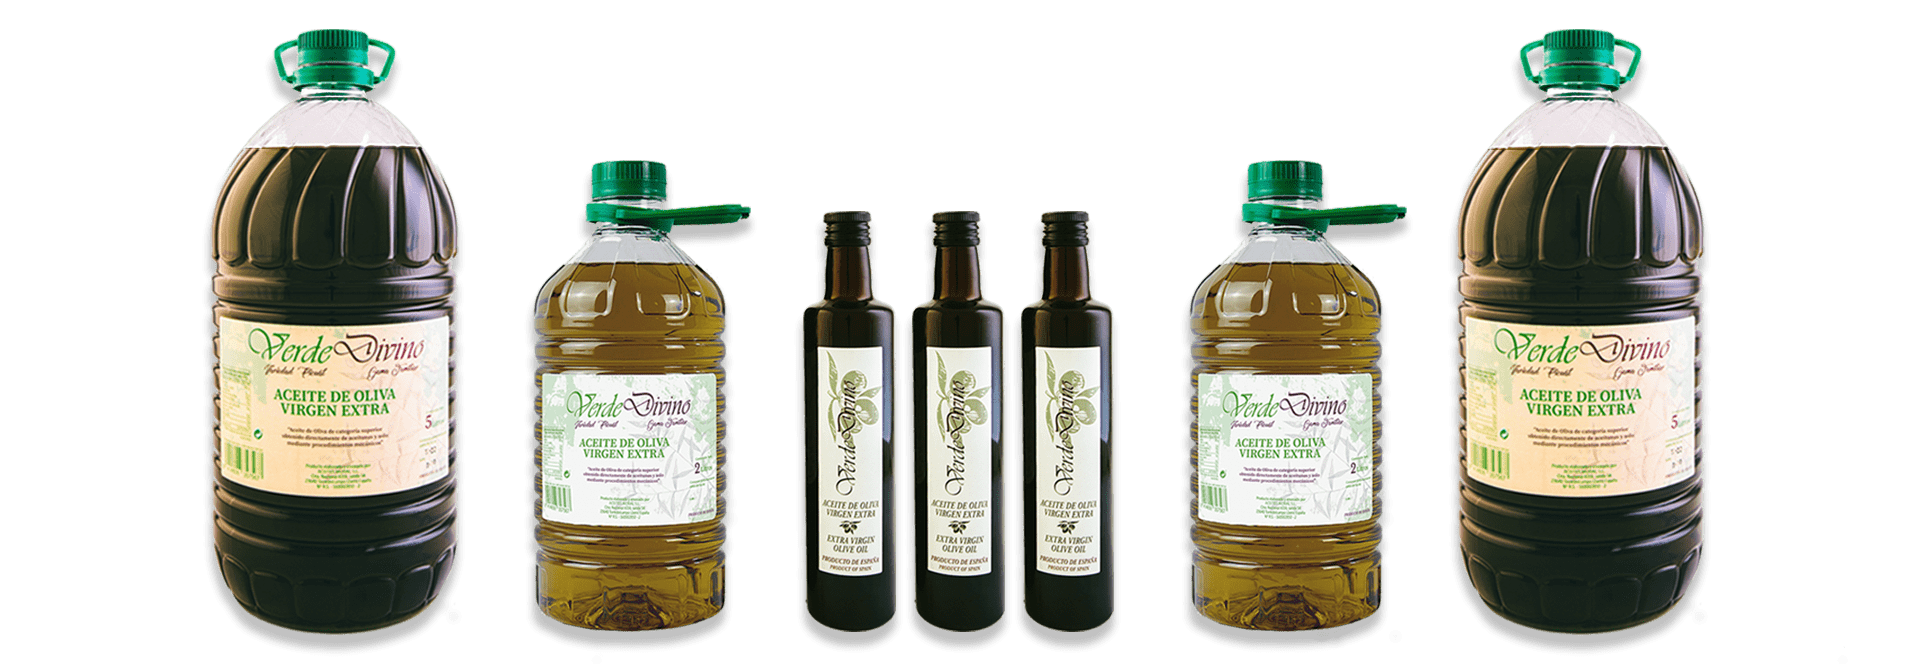 Range of Verde Divino Extra Virgin Olive Oil Carafes